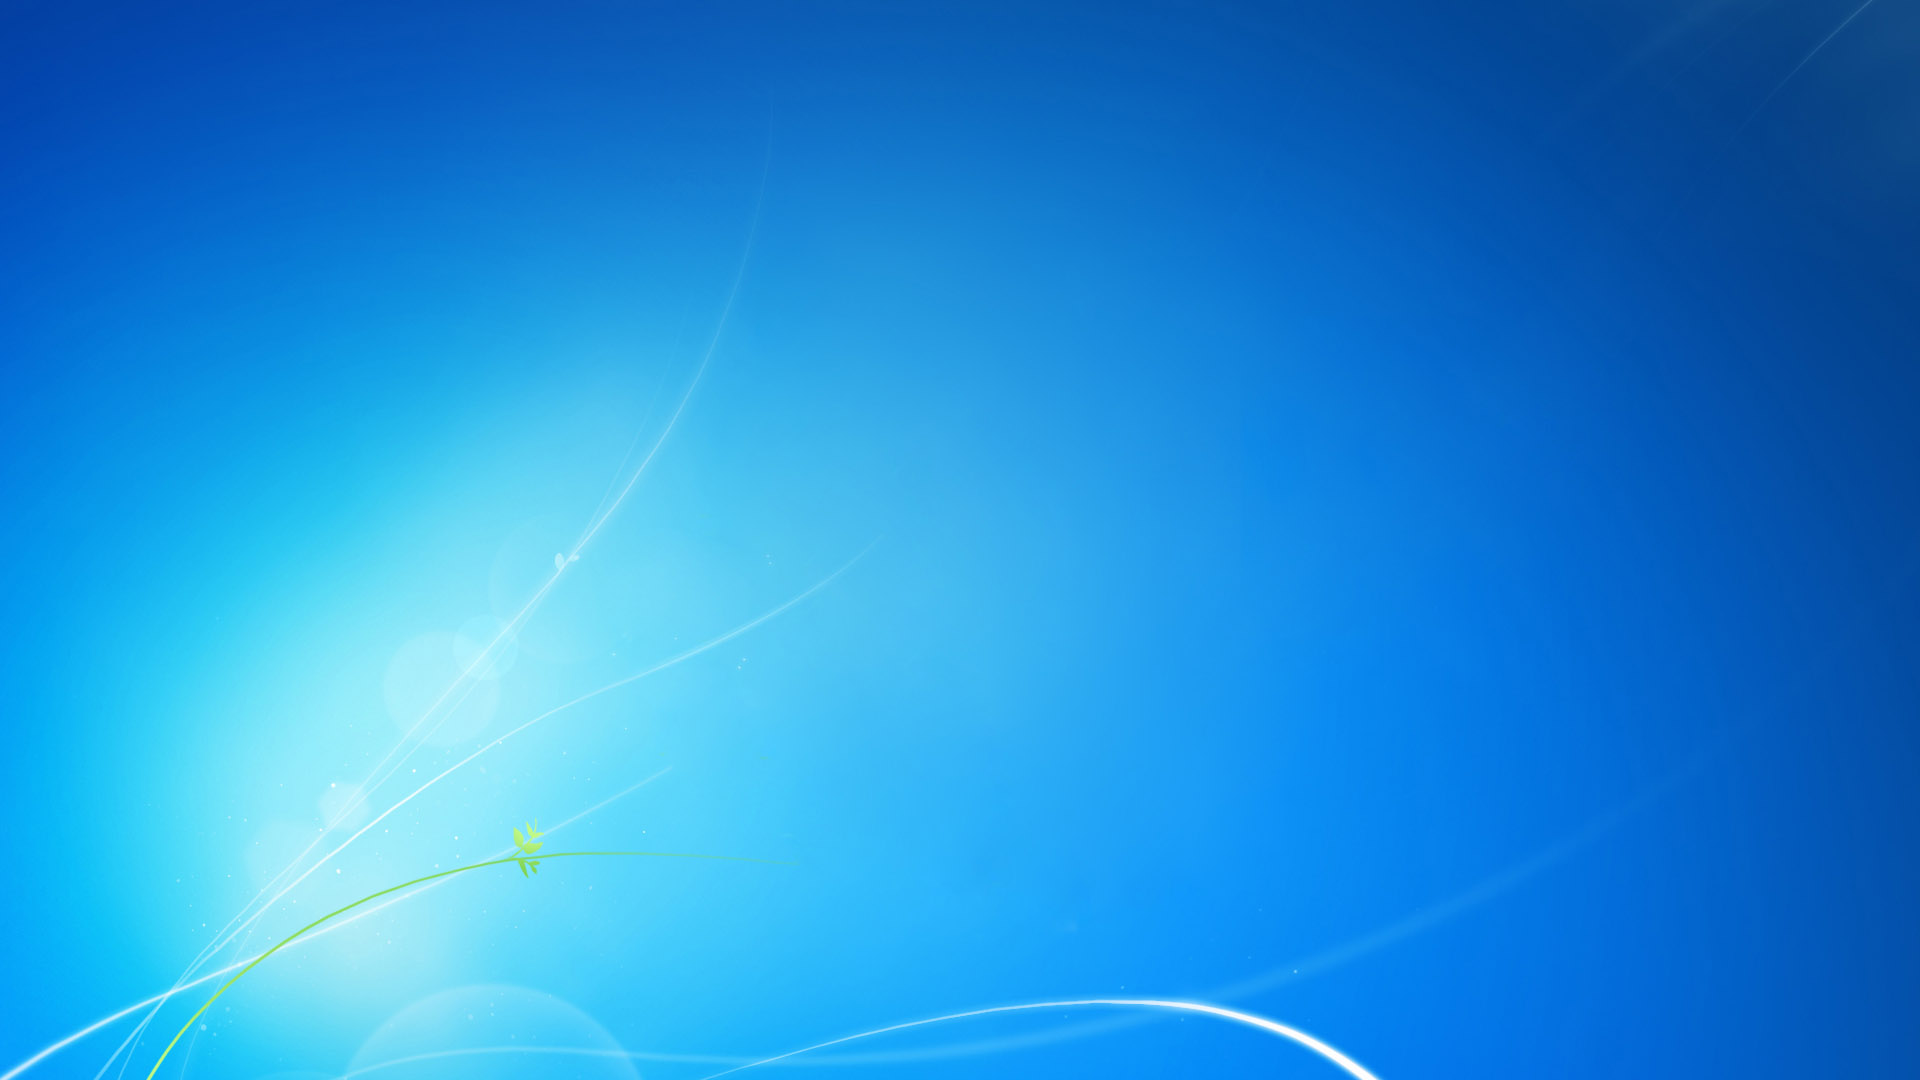 win7 blue desktop background